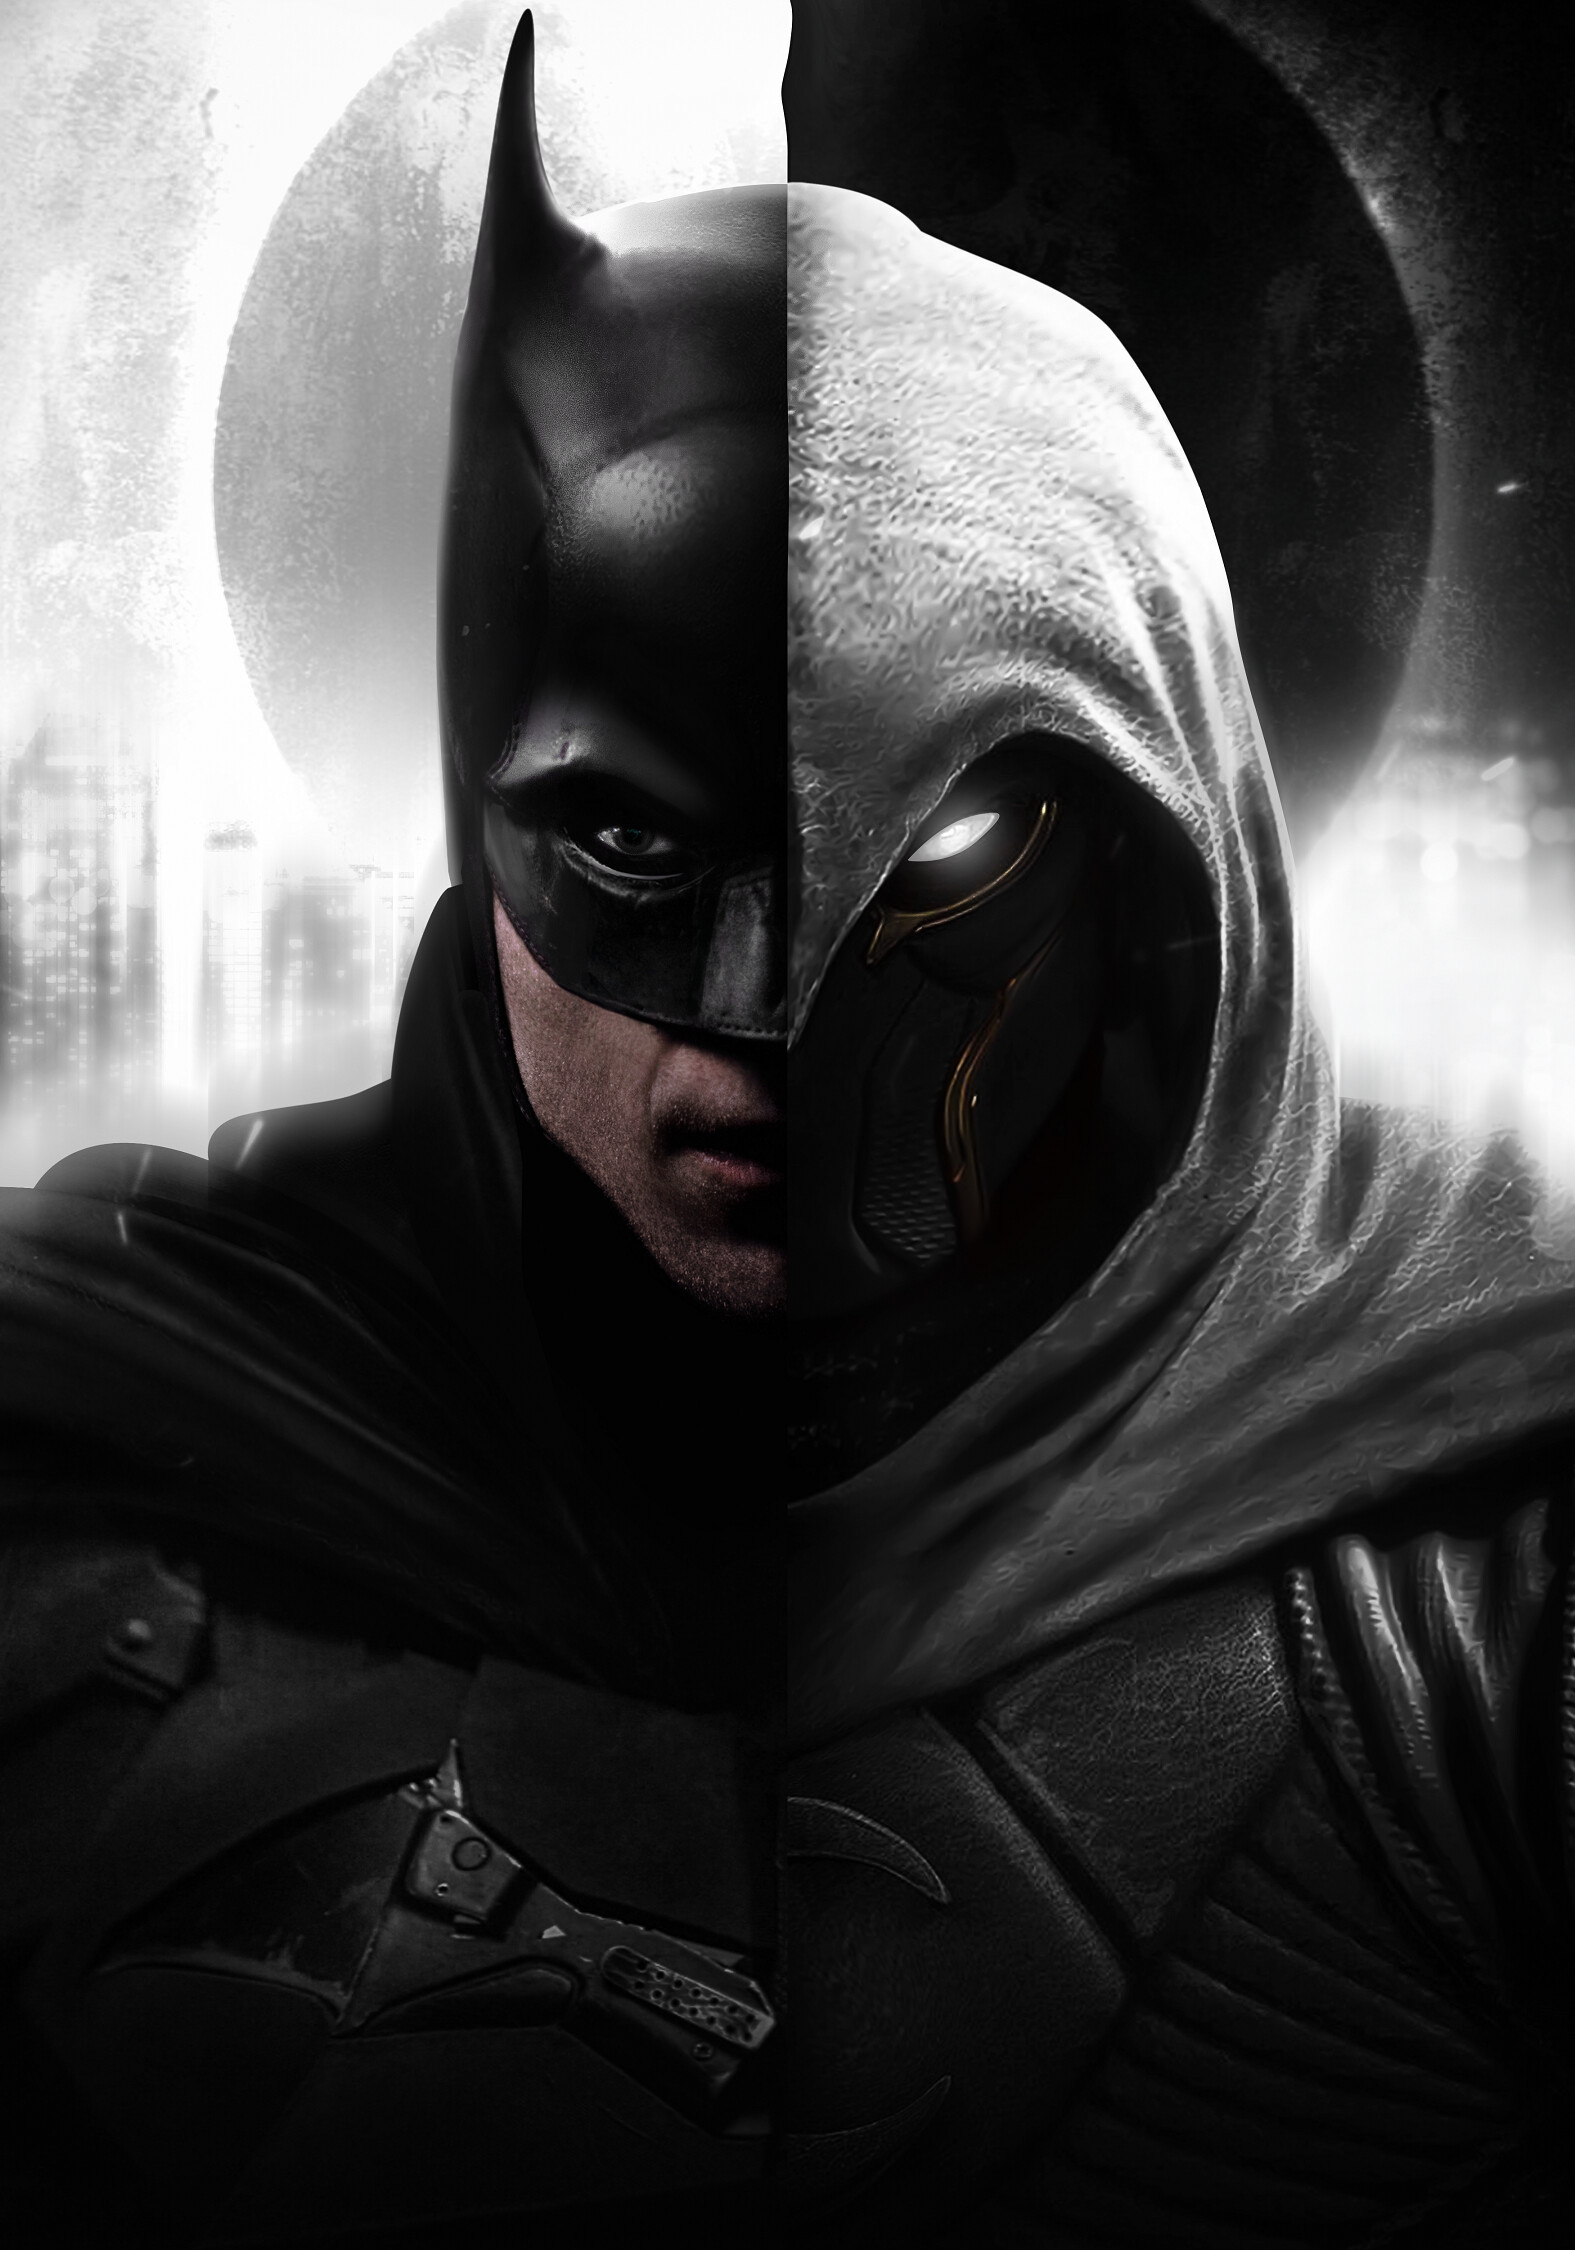 ArtStation - The Batman and Moon Knight